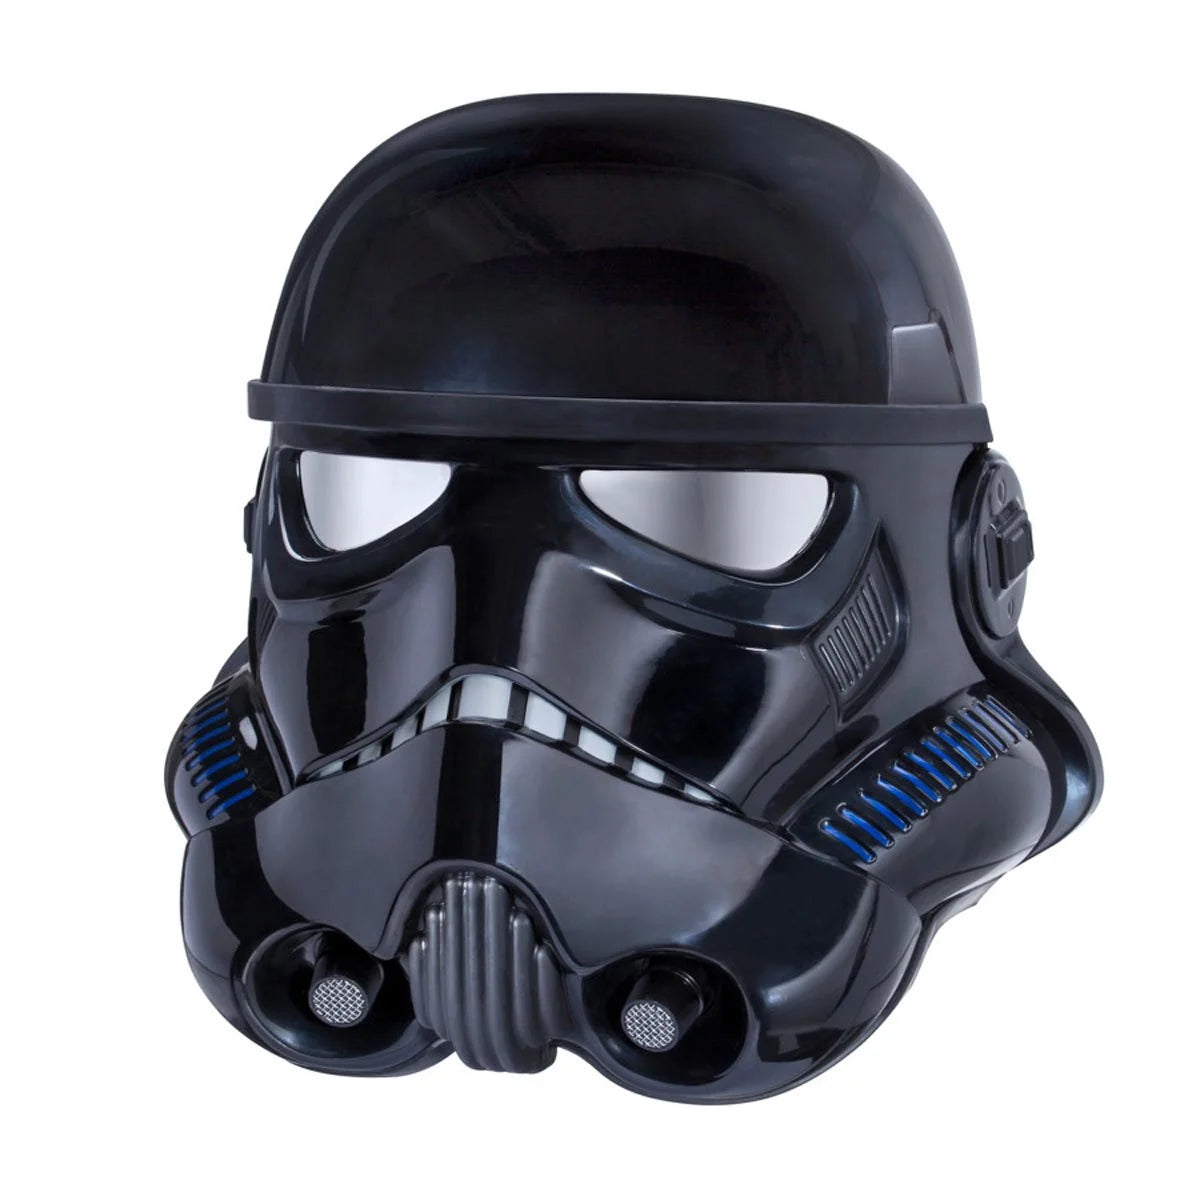 Star Wars The Black Series Shadow Trooper Electronic Voice-Changer Helmet Prop Replica - Exclusive